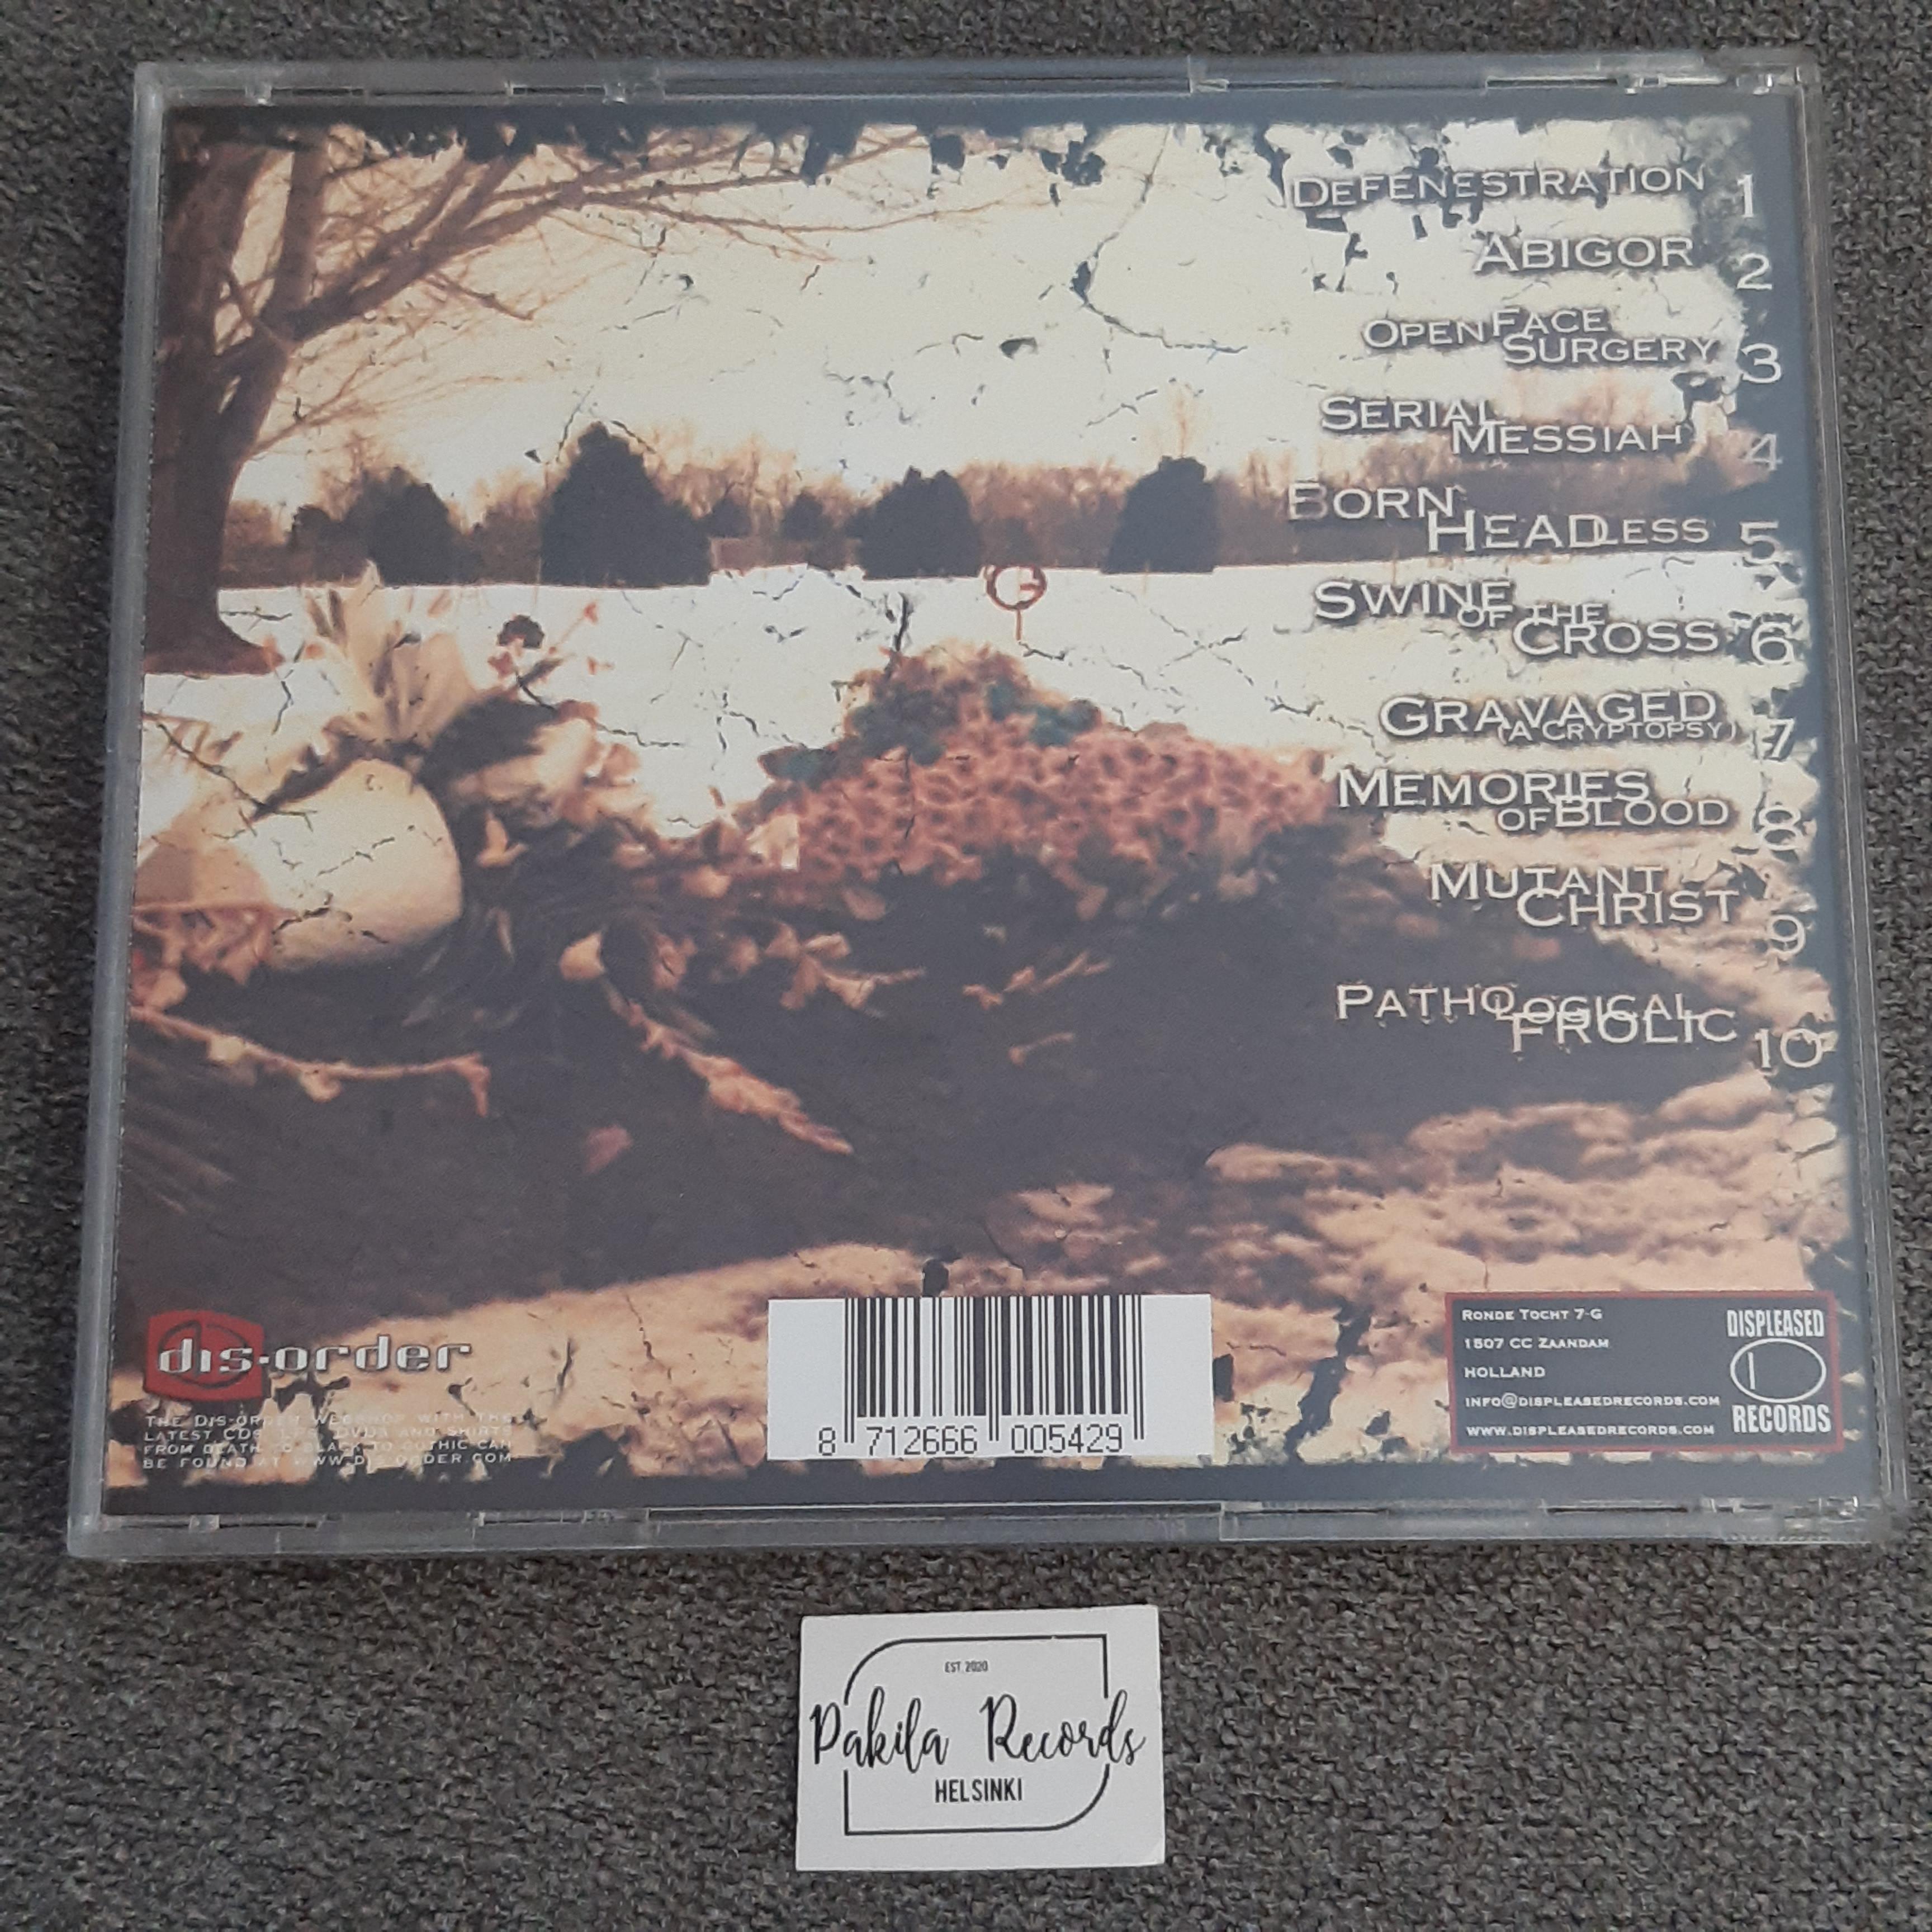 Cryptopsy - Blasphemy Made Flesh - CD (käytetty)